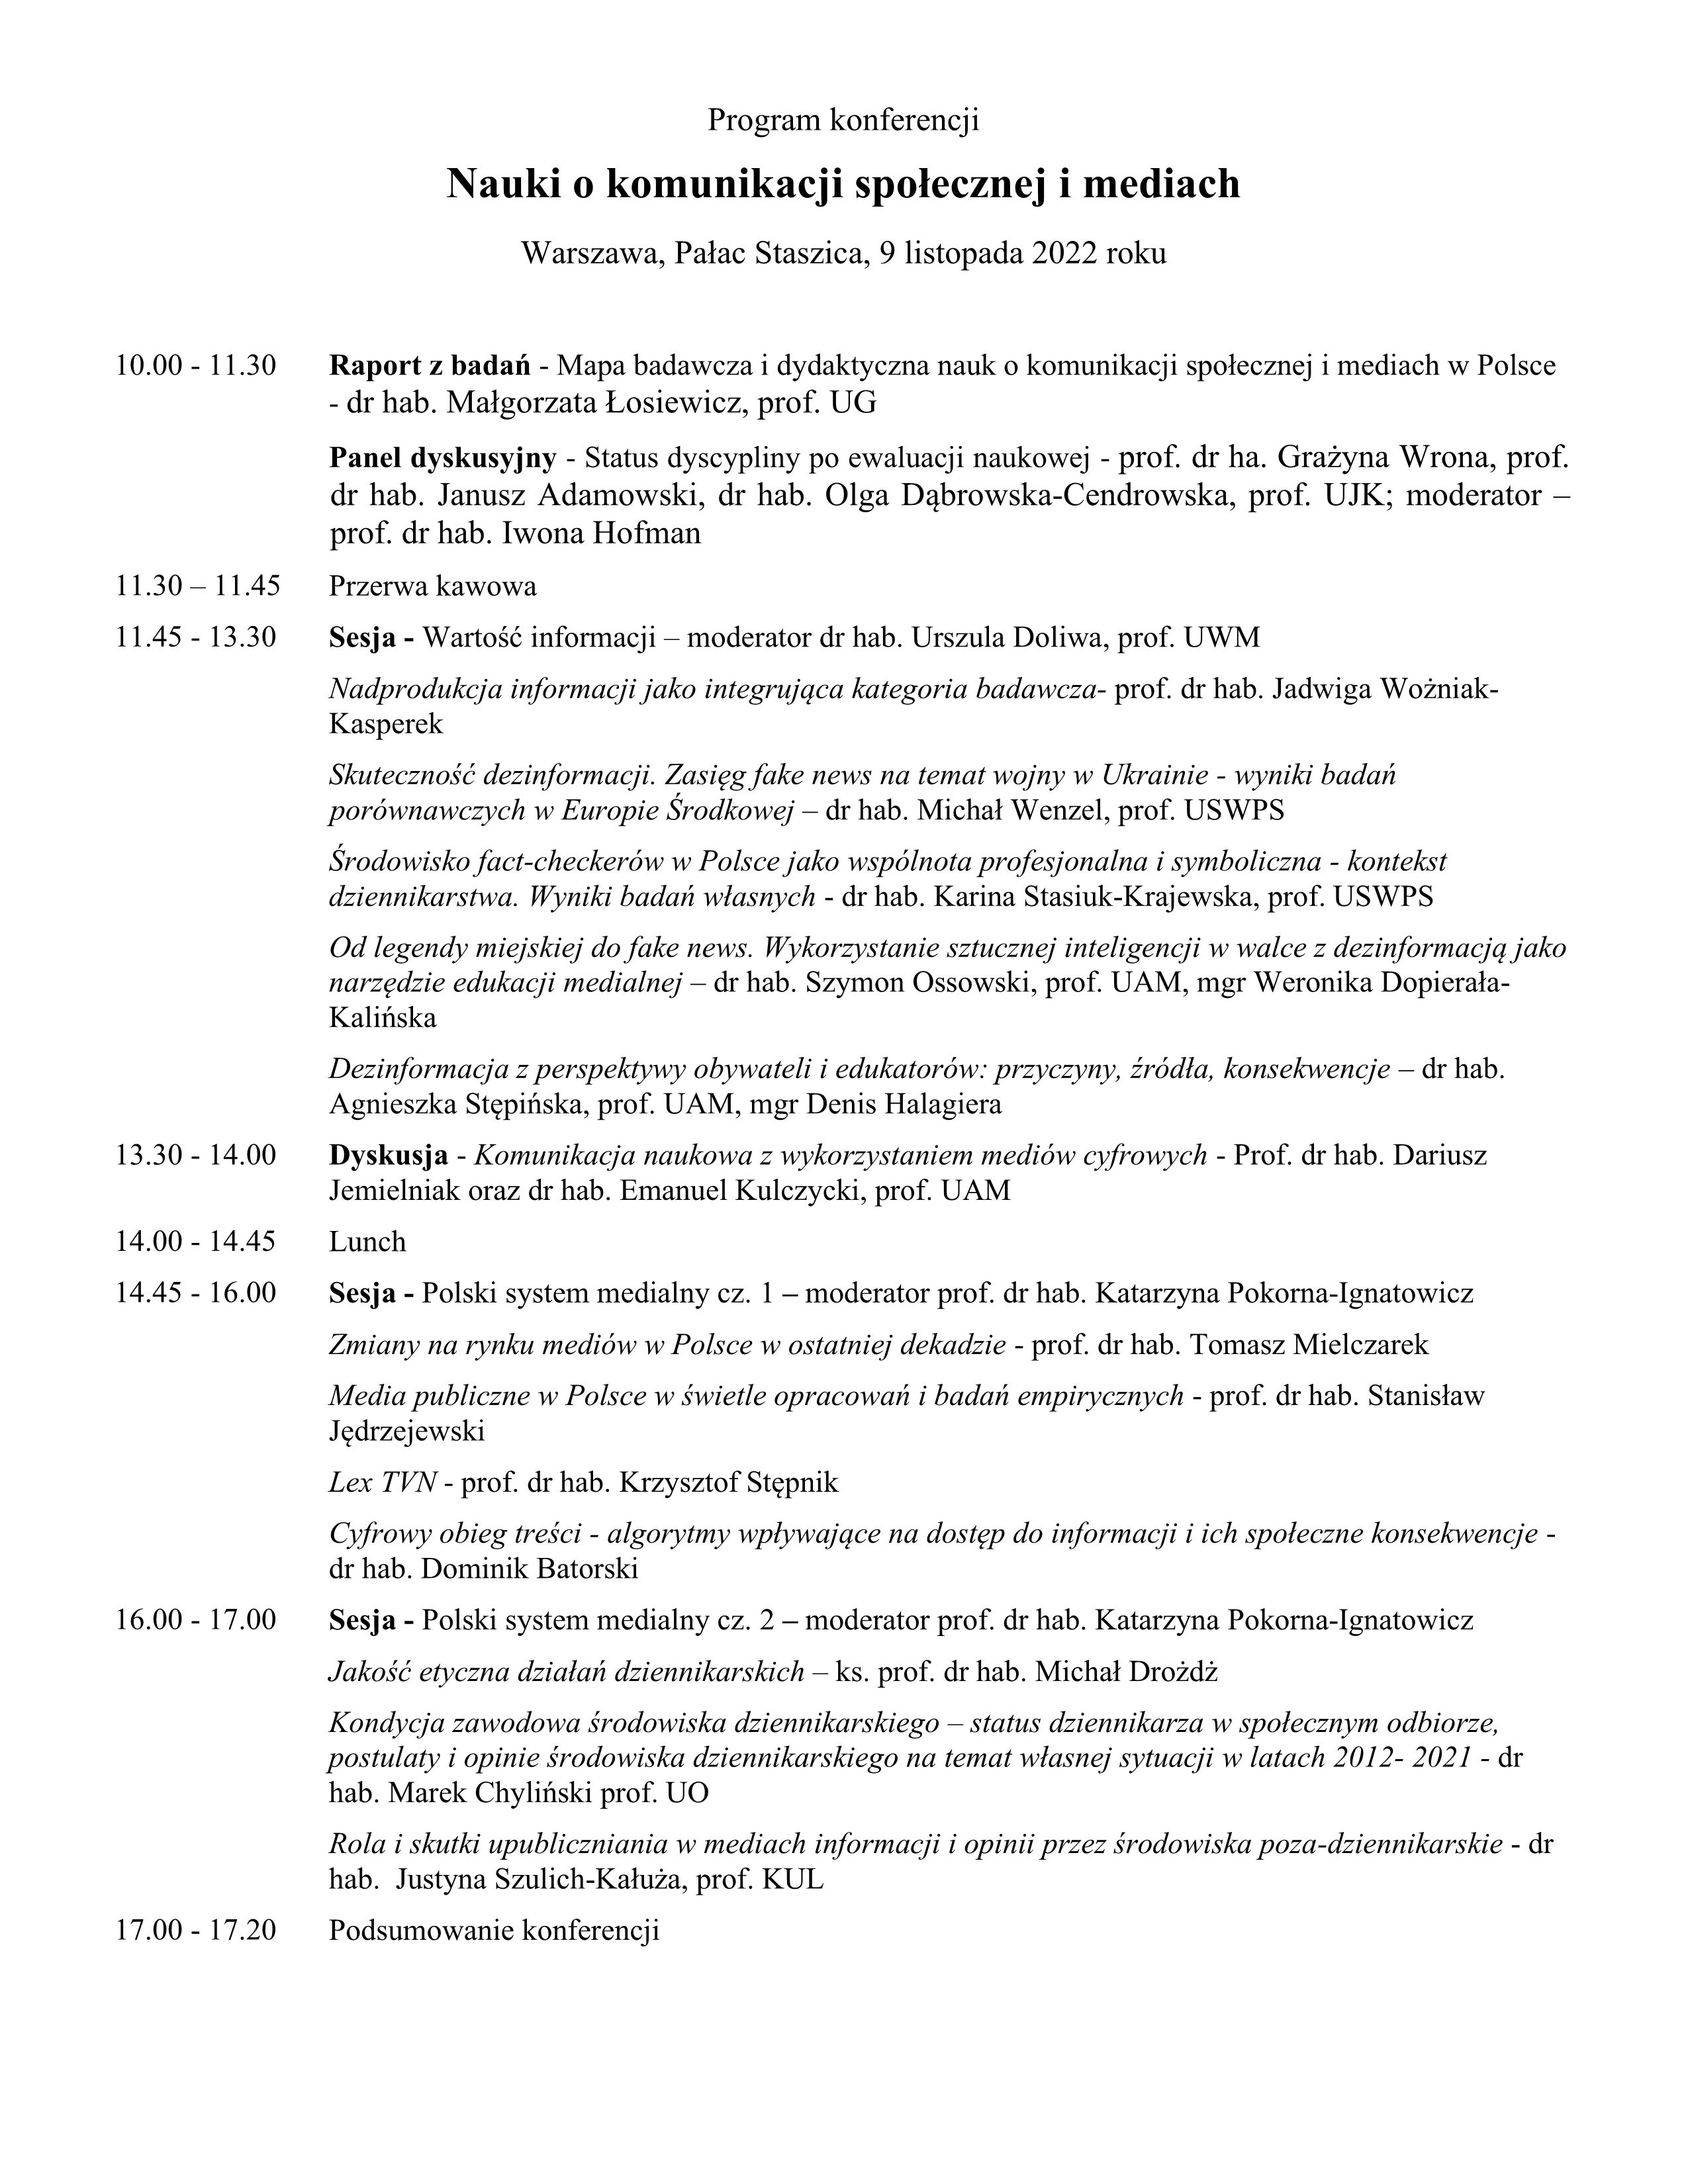 Program konferencji Nauki o komunikacji społecznej i mediach aktualizacja1